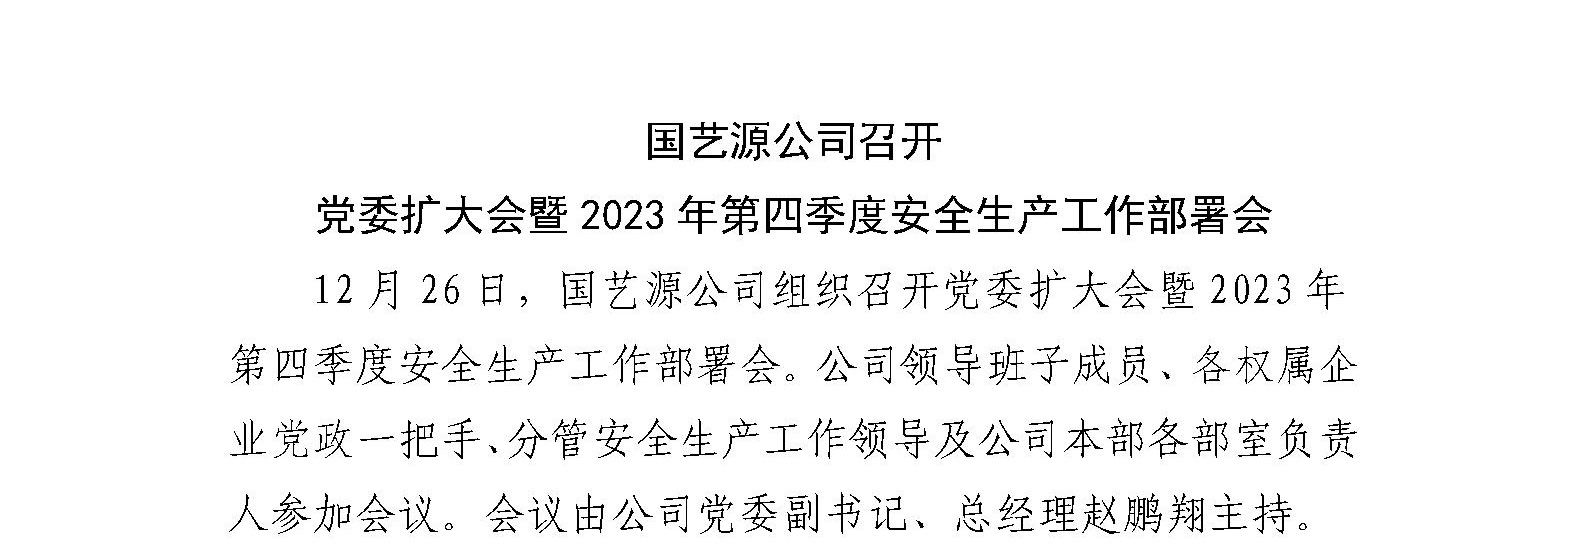 国艺源公司召开 党委扩大会暨2023年第四季度安全生产工作部署会